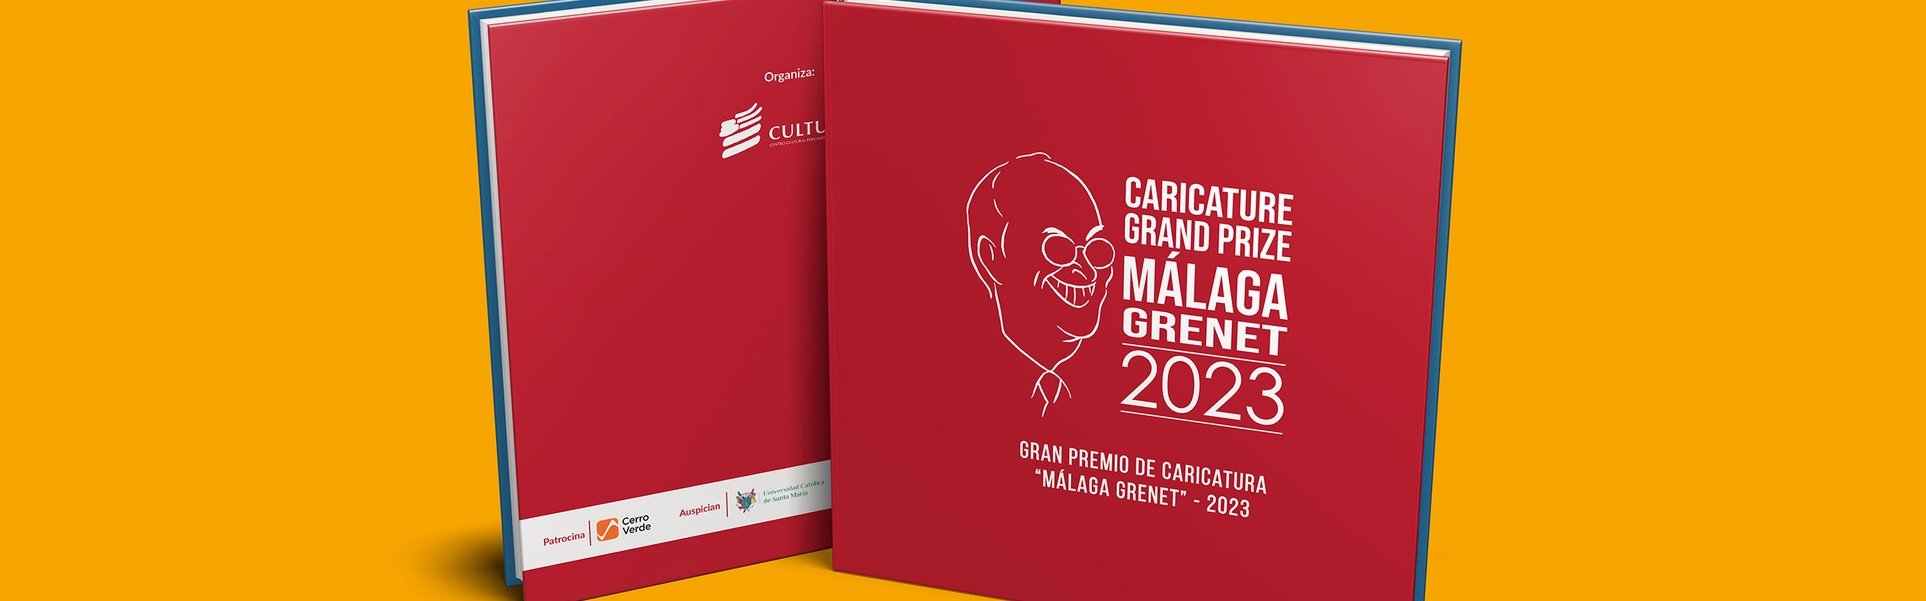 Catálogo do Grande Prêmio de Caricatura Málaga Grenet no Peru